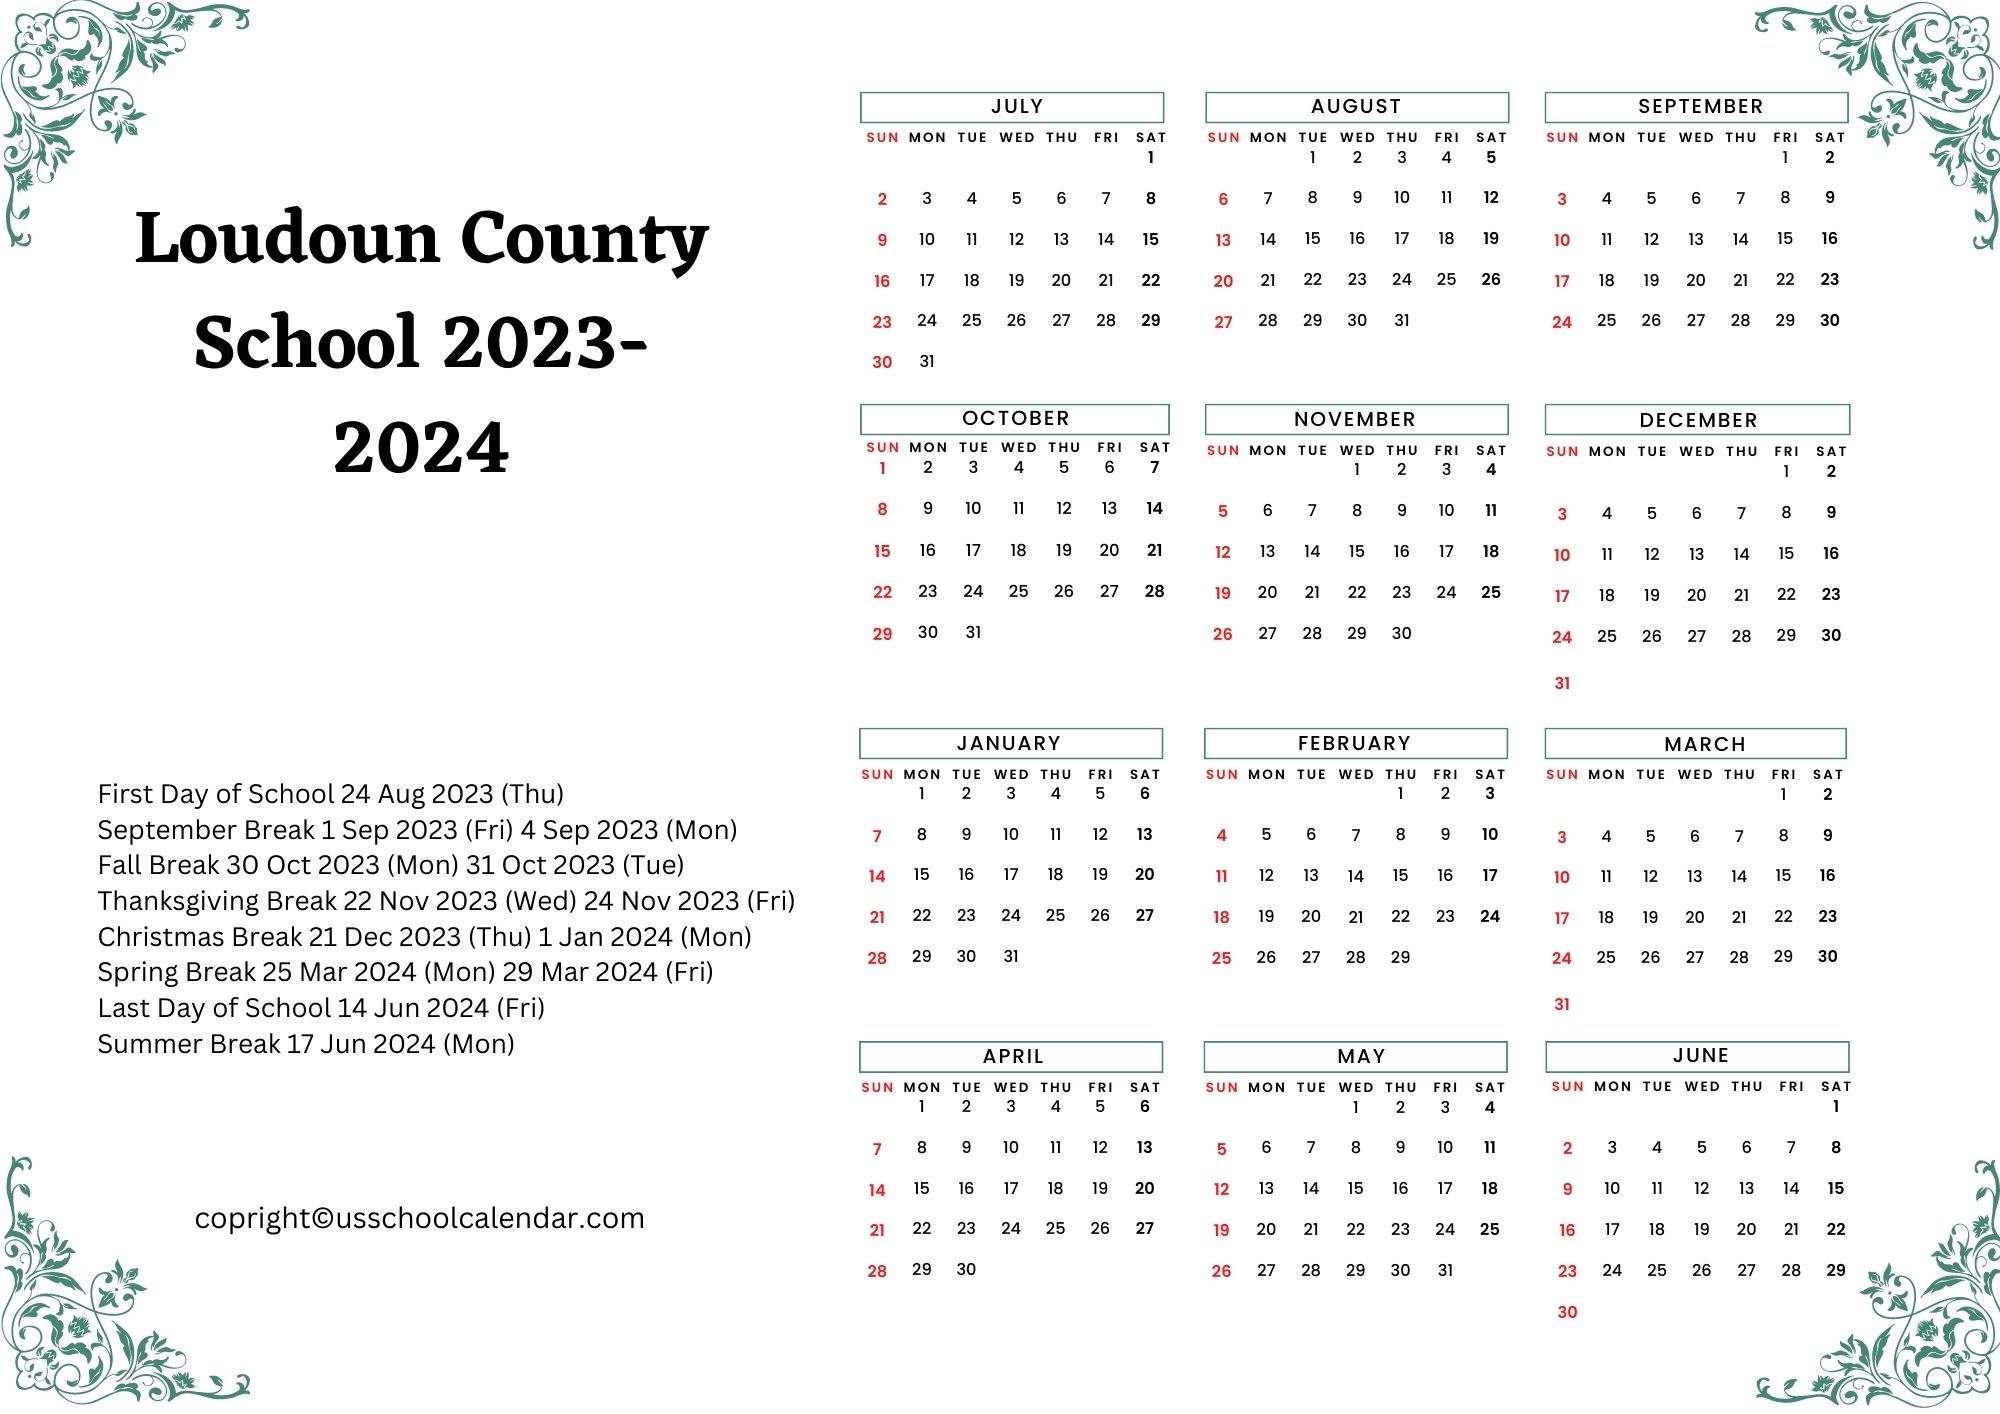 Loudoun County School Calendar & Holidays 20232024 [LCPS]